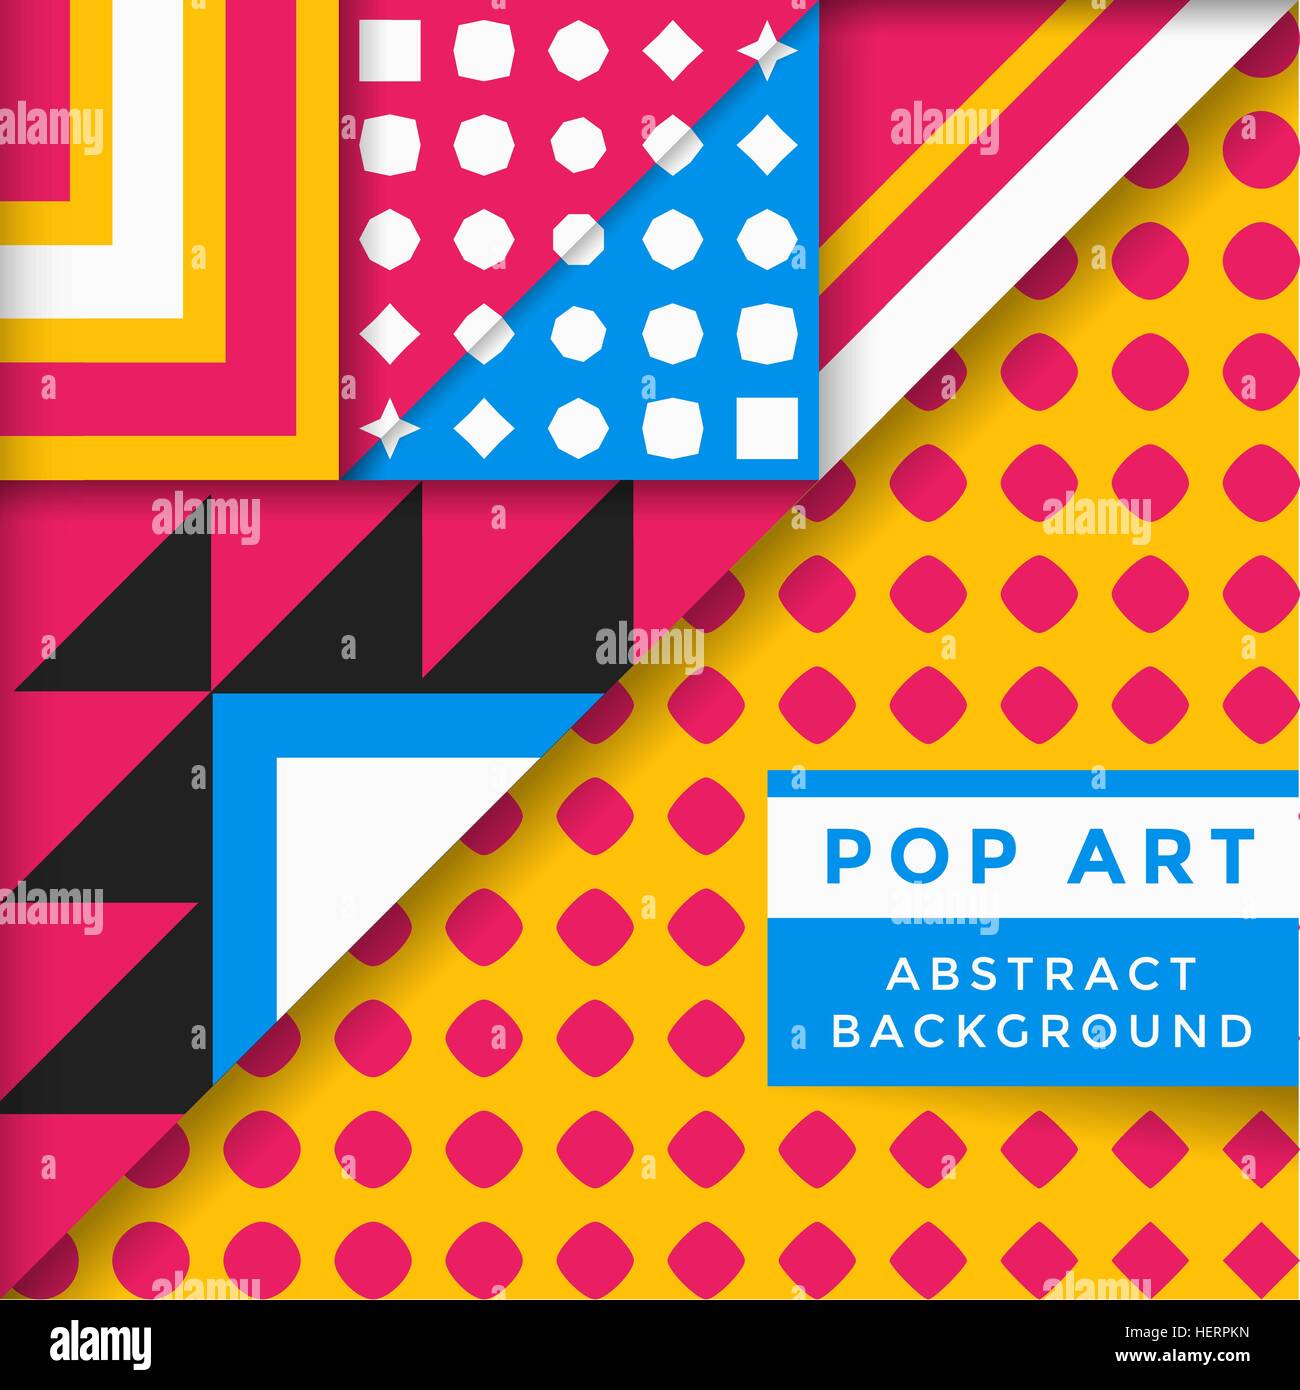 Poster pop art design 